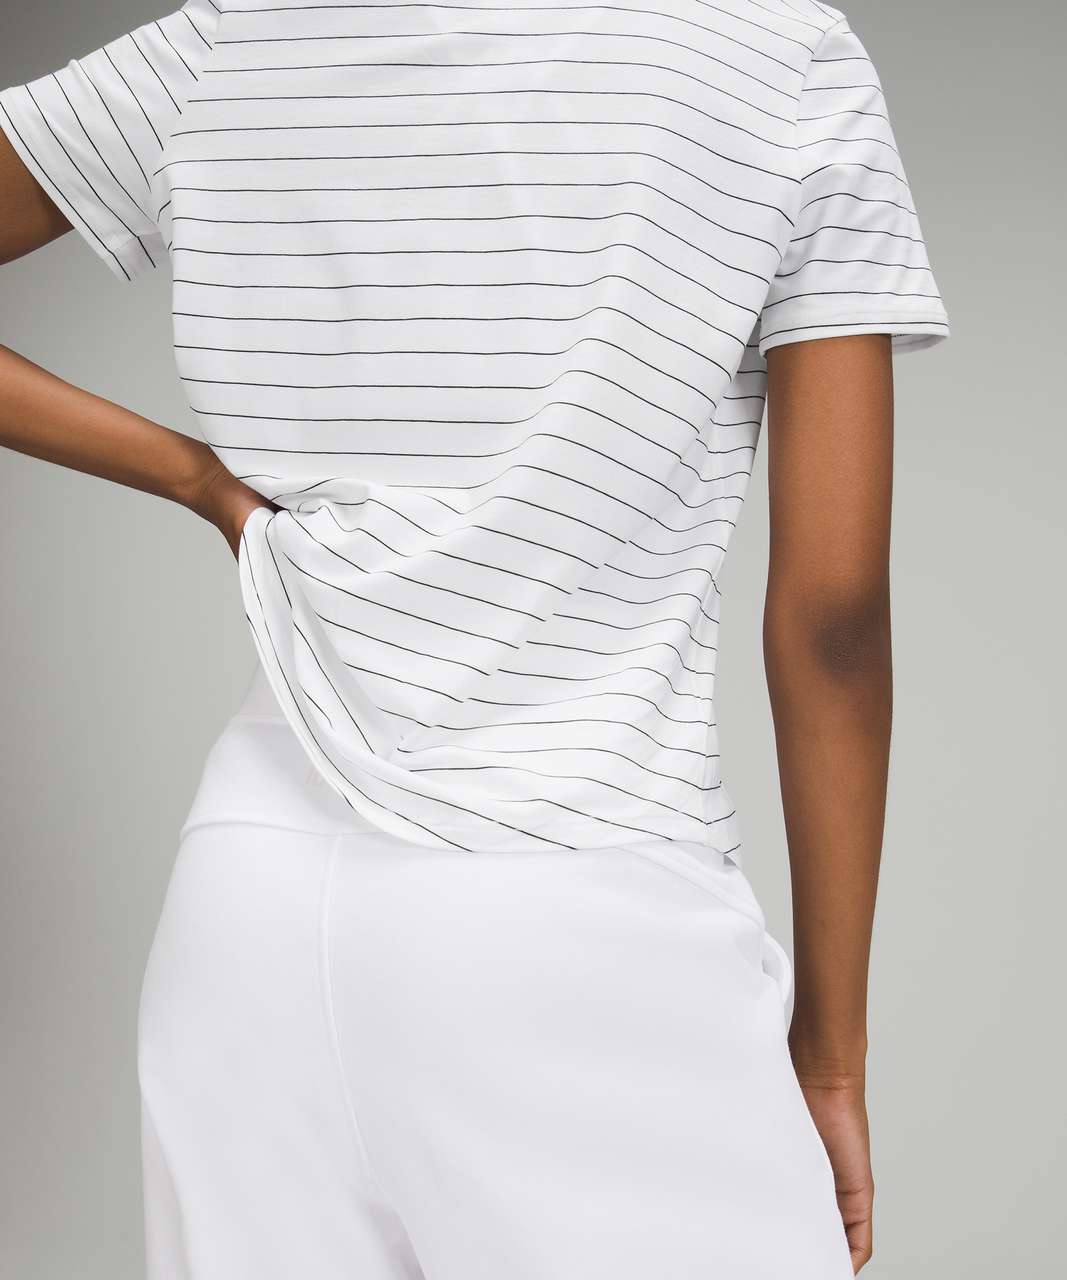 Lululemon Love Crew Short Sleeve T-Shirt - Short Serve Stripe White Black